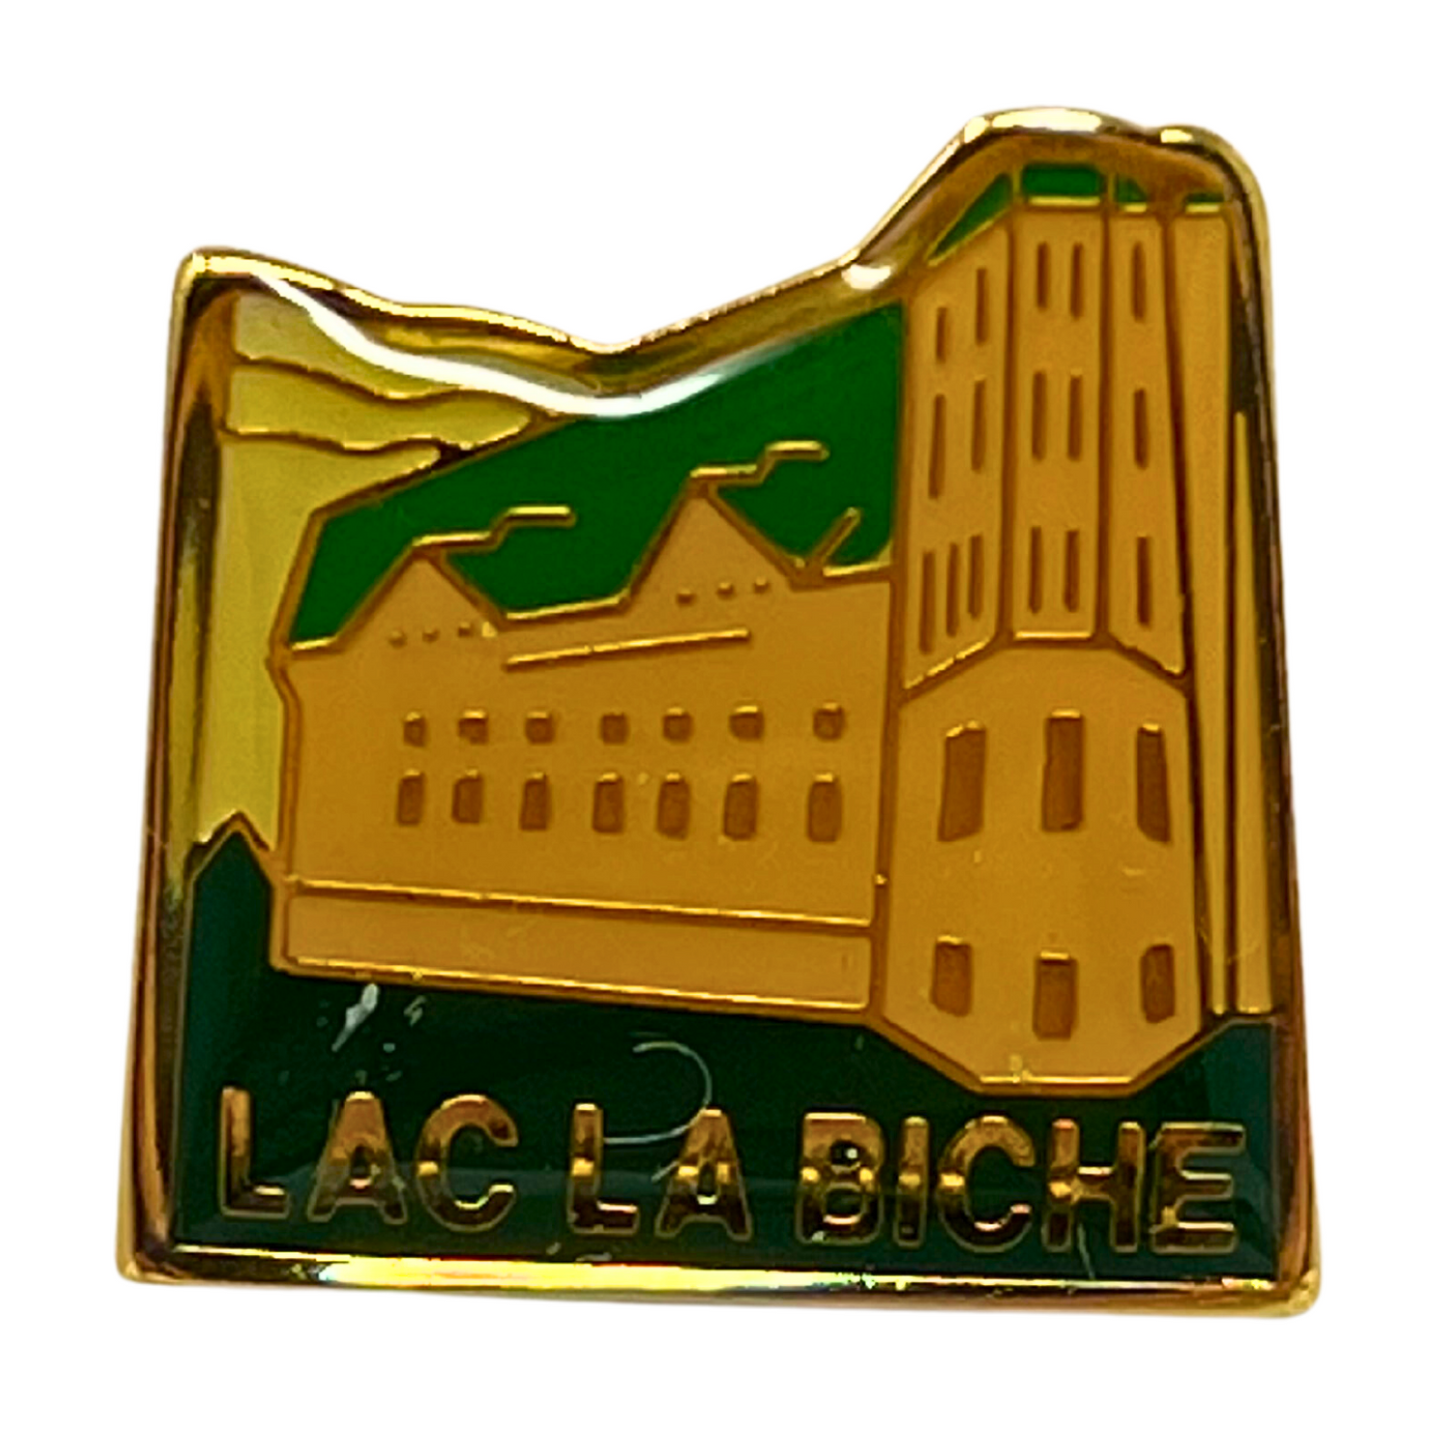 Lac La Biche Cities & States Lapel Pin P2